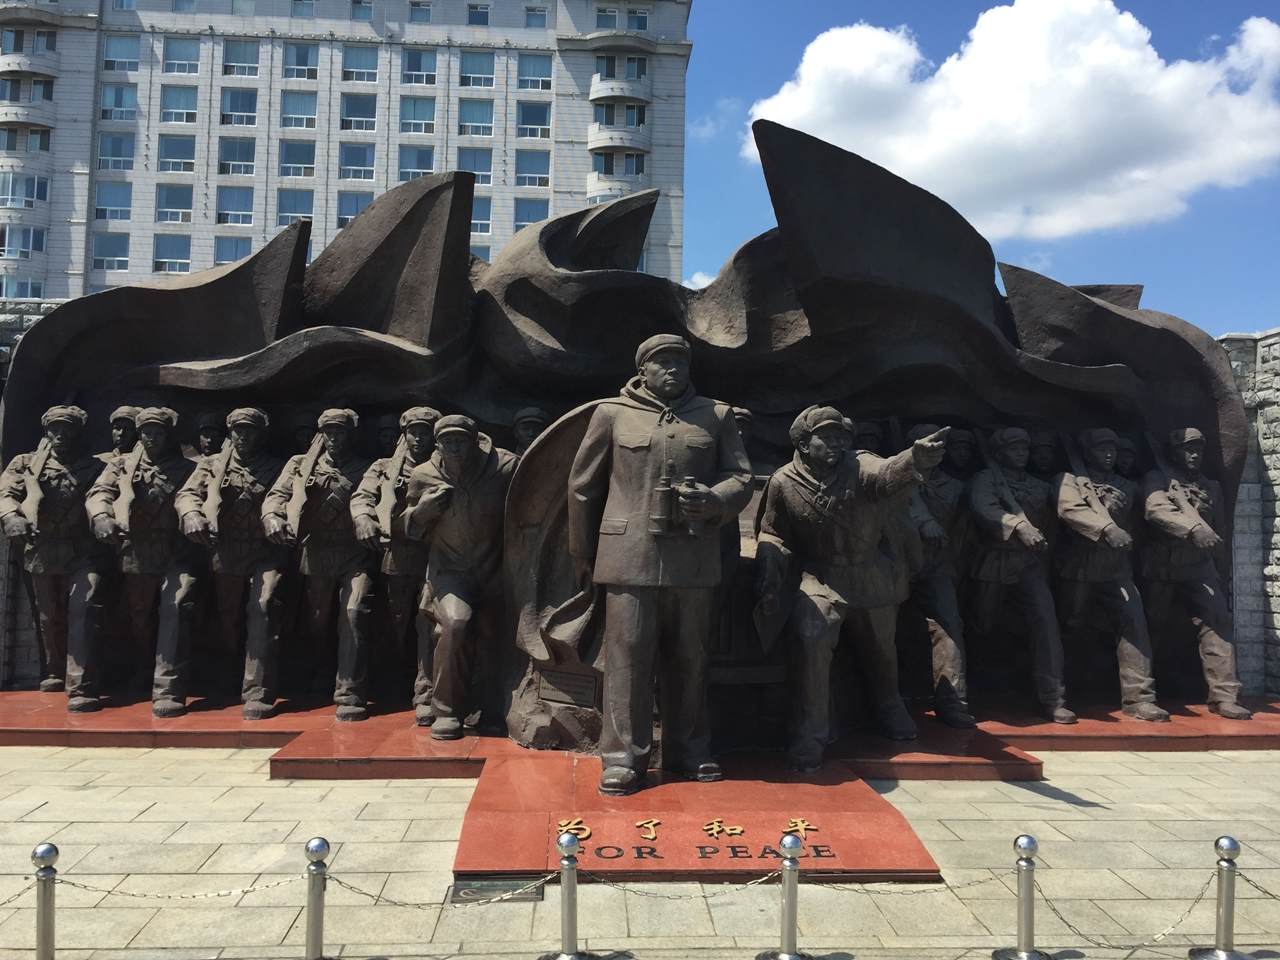 압록강 단교 입구, 중국군의 한국전쟁 참전을 형상화한 동상